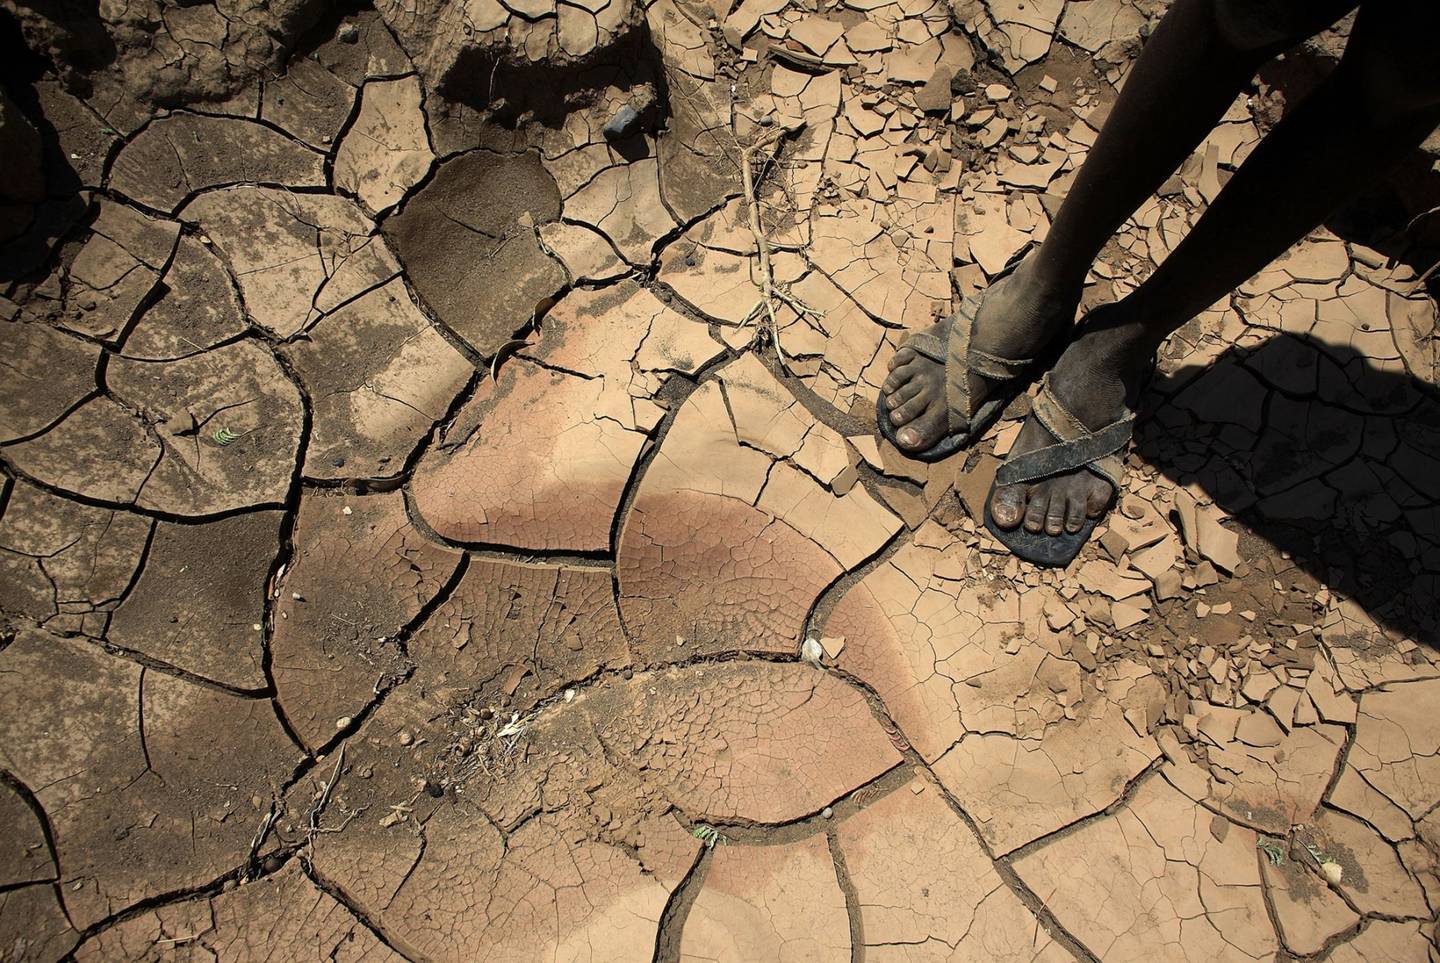  Más de 23 millones de personas en África Oriental se enfrentan a una grave escasez de agua y alimentos, una situación que se ha visto agravada por el cambio climático. dfd